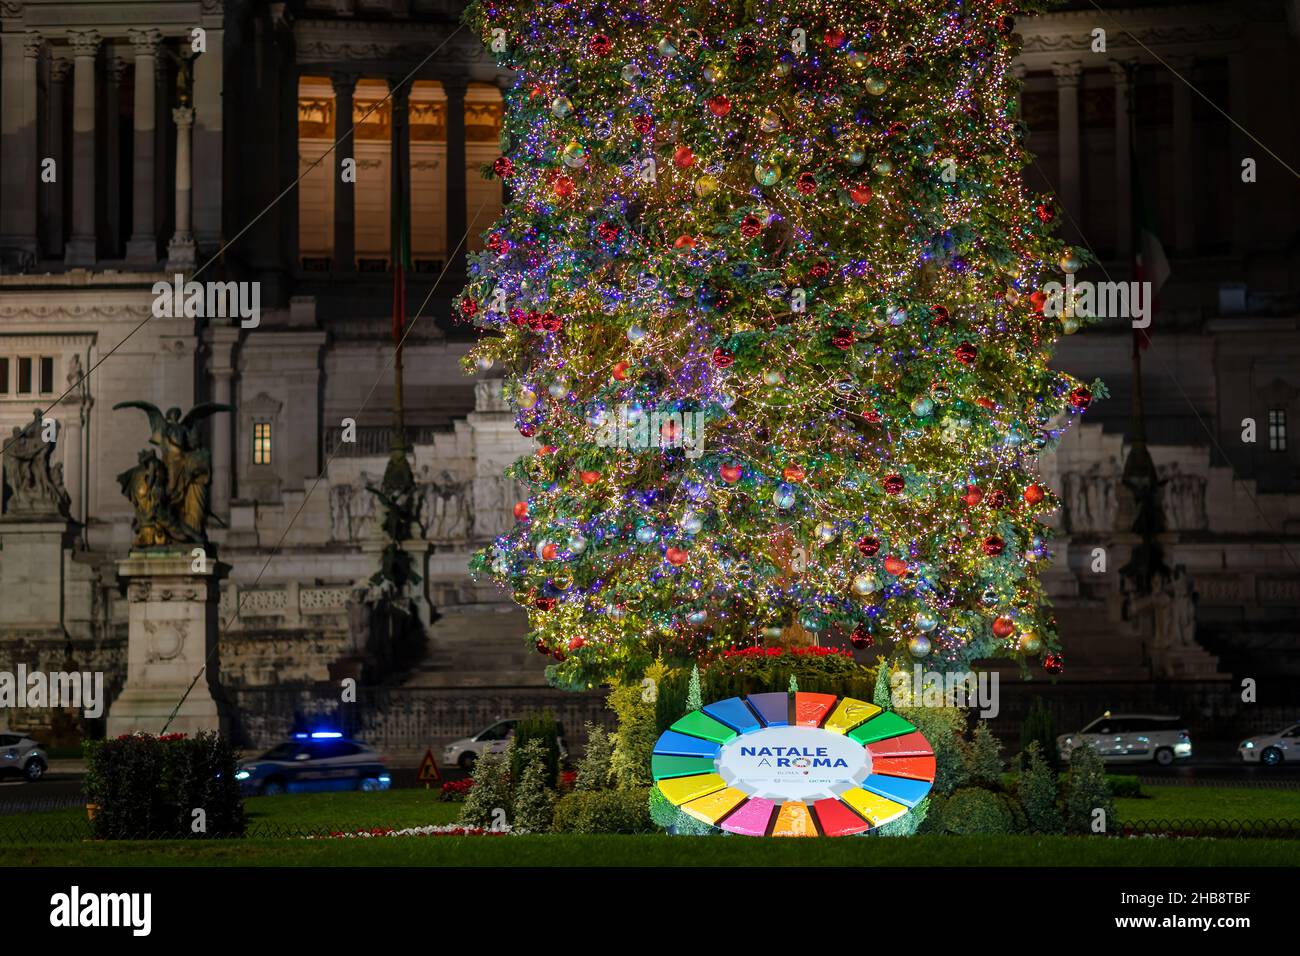 Rom, Italien - 12. Dezember 2021: Weihnachtsbaum auf der Piazza Venezia schmücken Weihnachtsdekorationen und Lichter den ganzen Platz, im Hintergrund das N Stockfoto